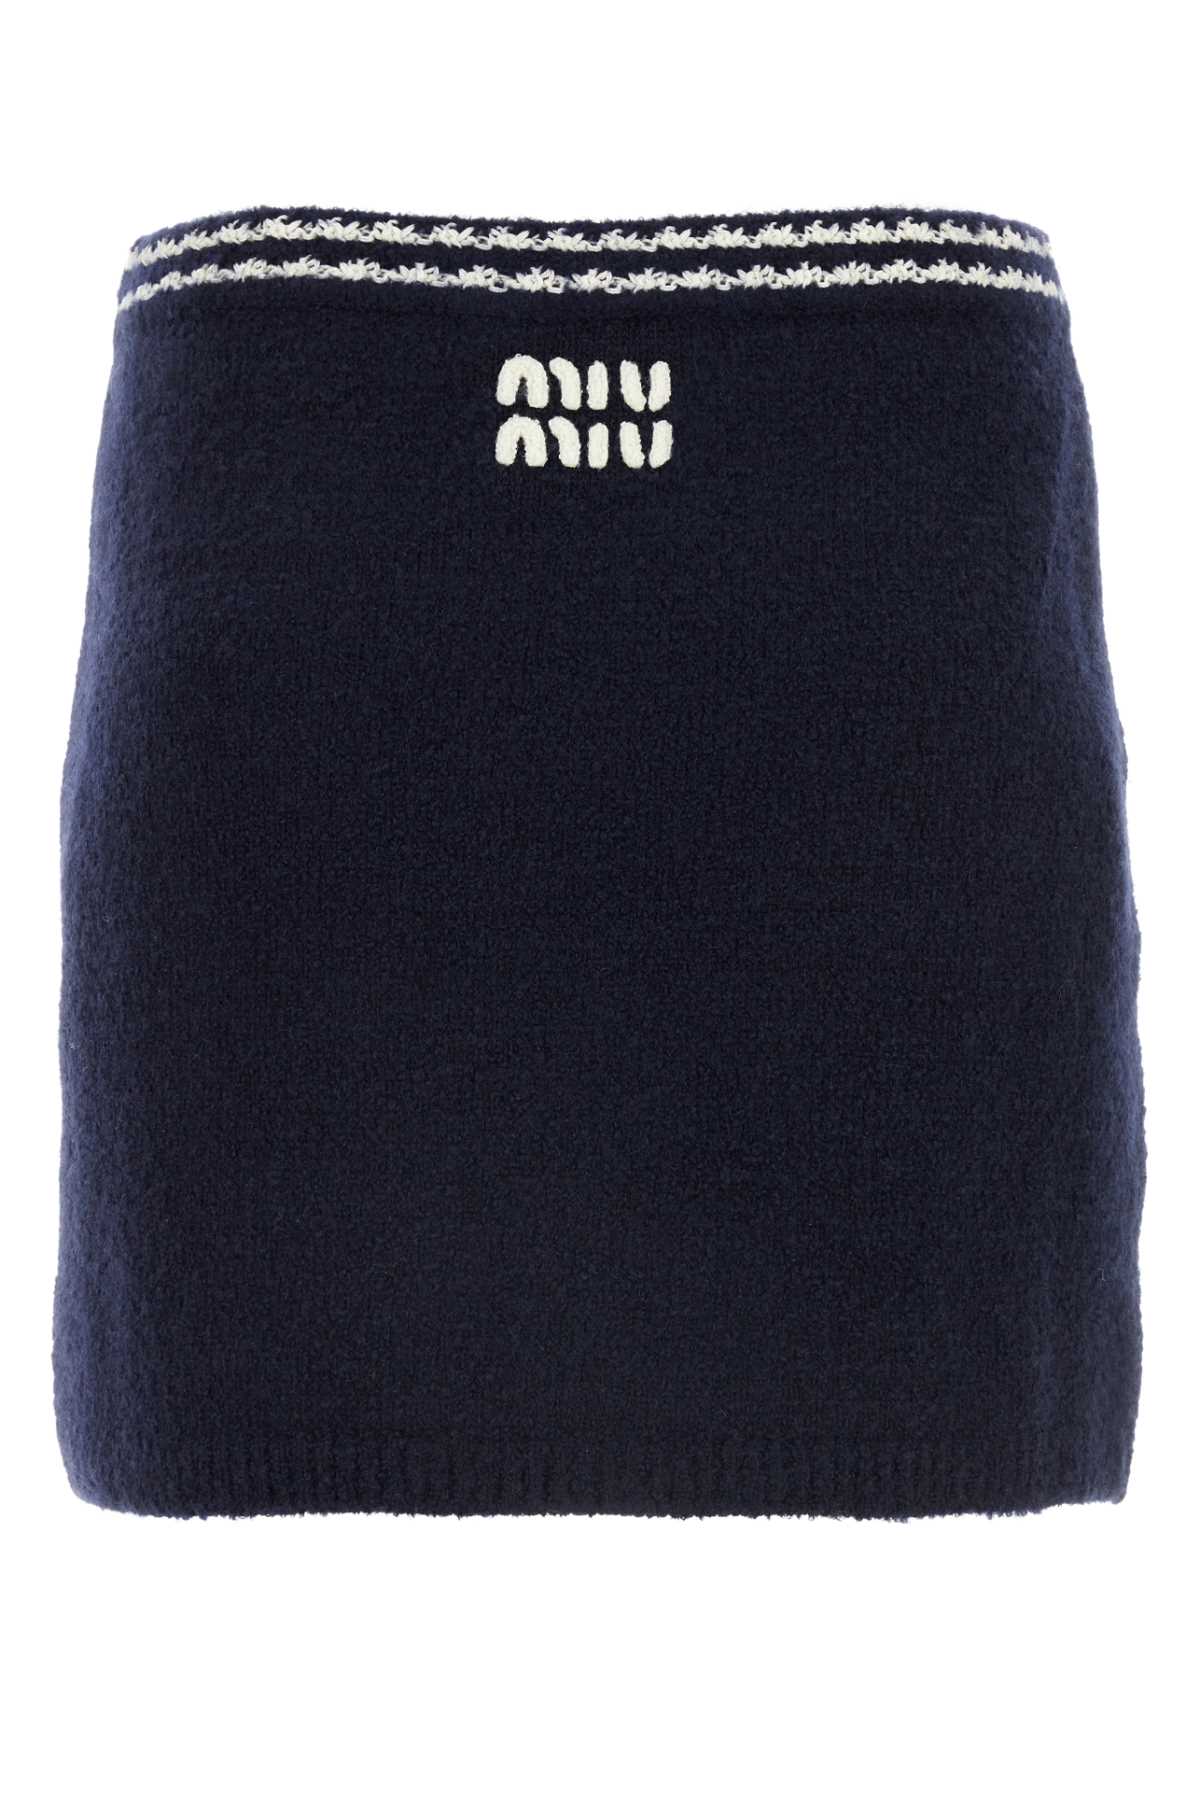 Miu Miu Blue Wool Blend Mini Skirt In Blunaturale